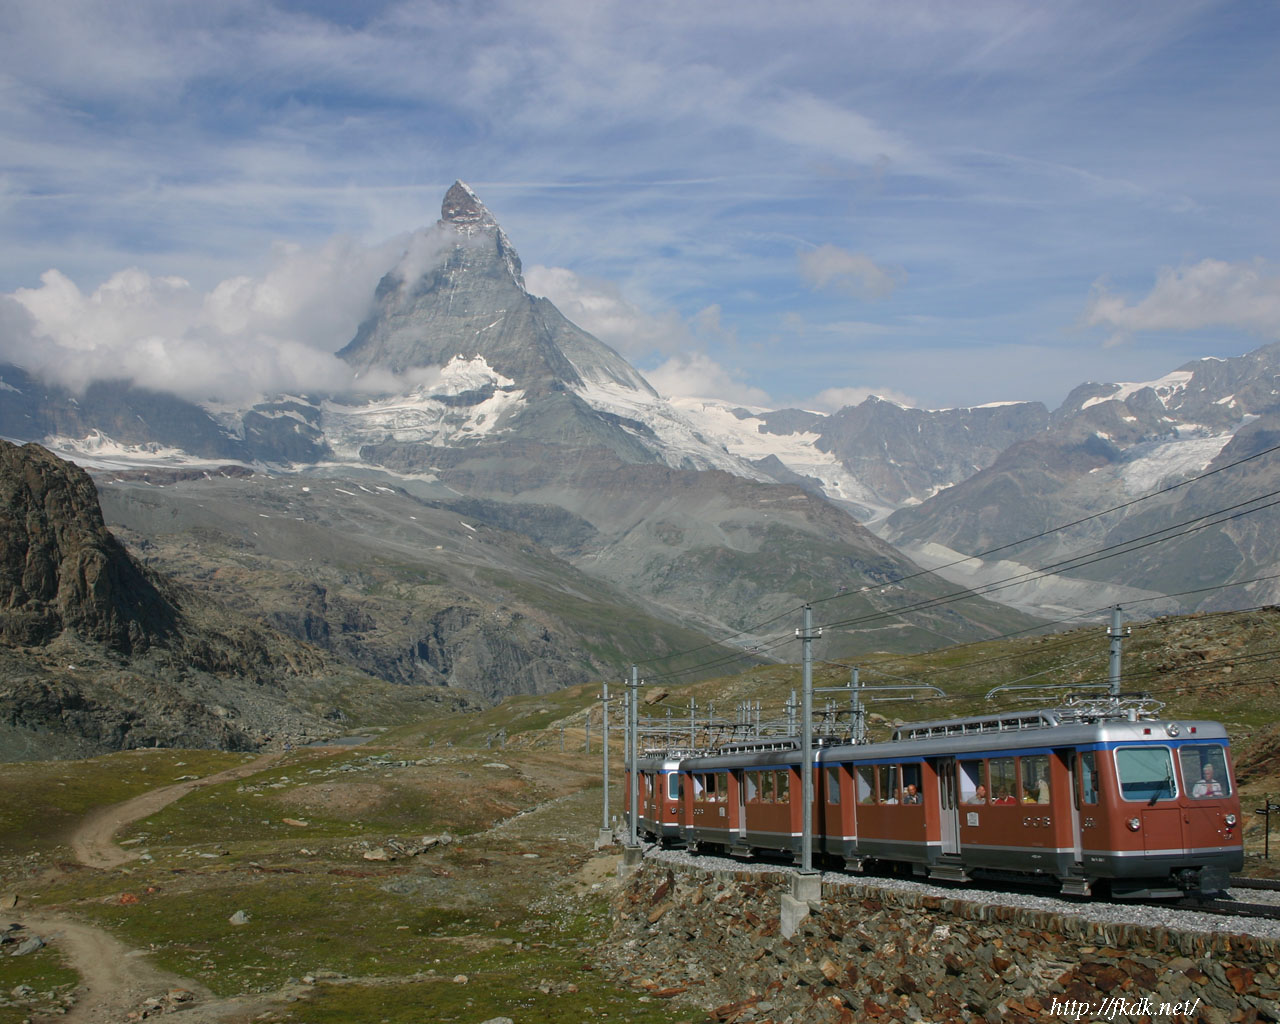 マッターホルンと登山列車の壁紙 風景写真無料壁紙